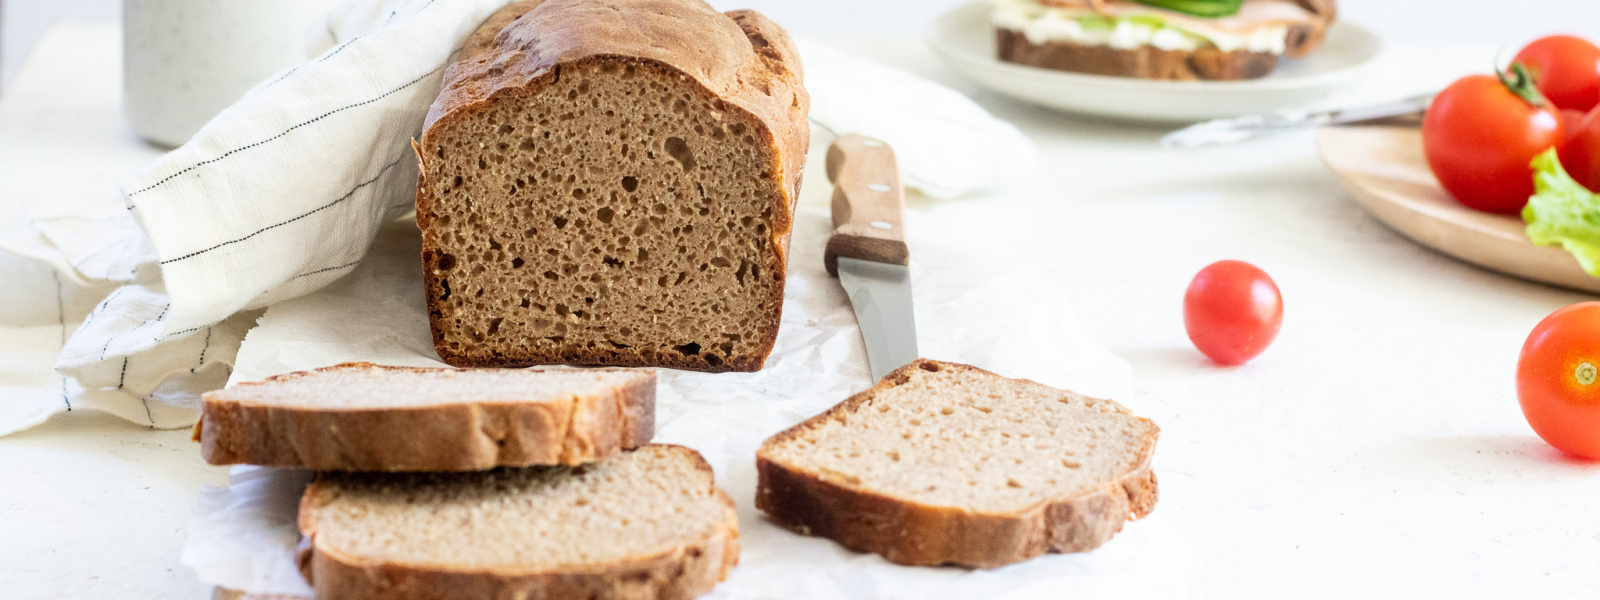 Celozrnný žitný kváskový chléb do formy